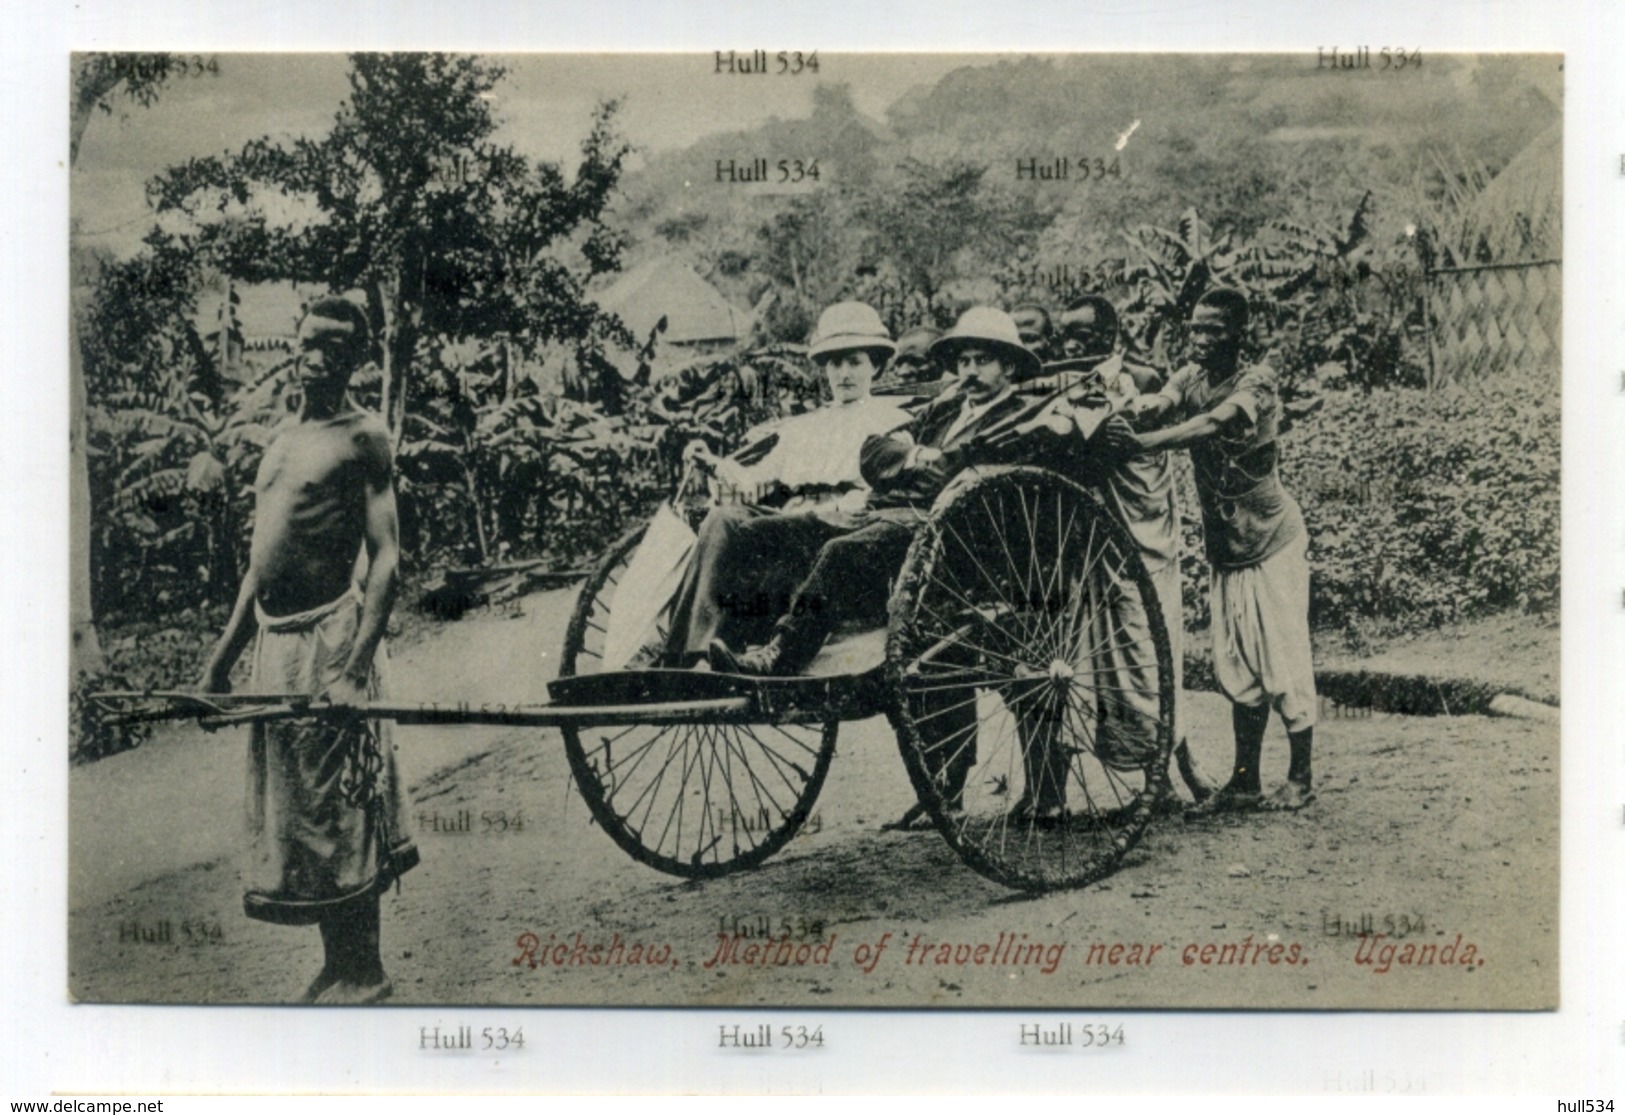 Uganda Rickshaw Method Of Travelling Near Centres Postcard 1910s-20s Kampala - Uganda